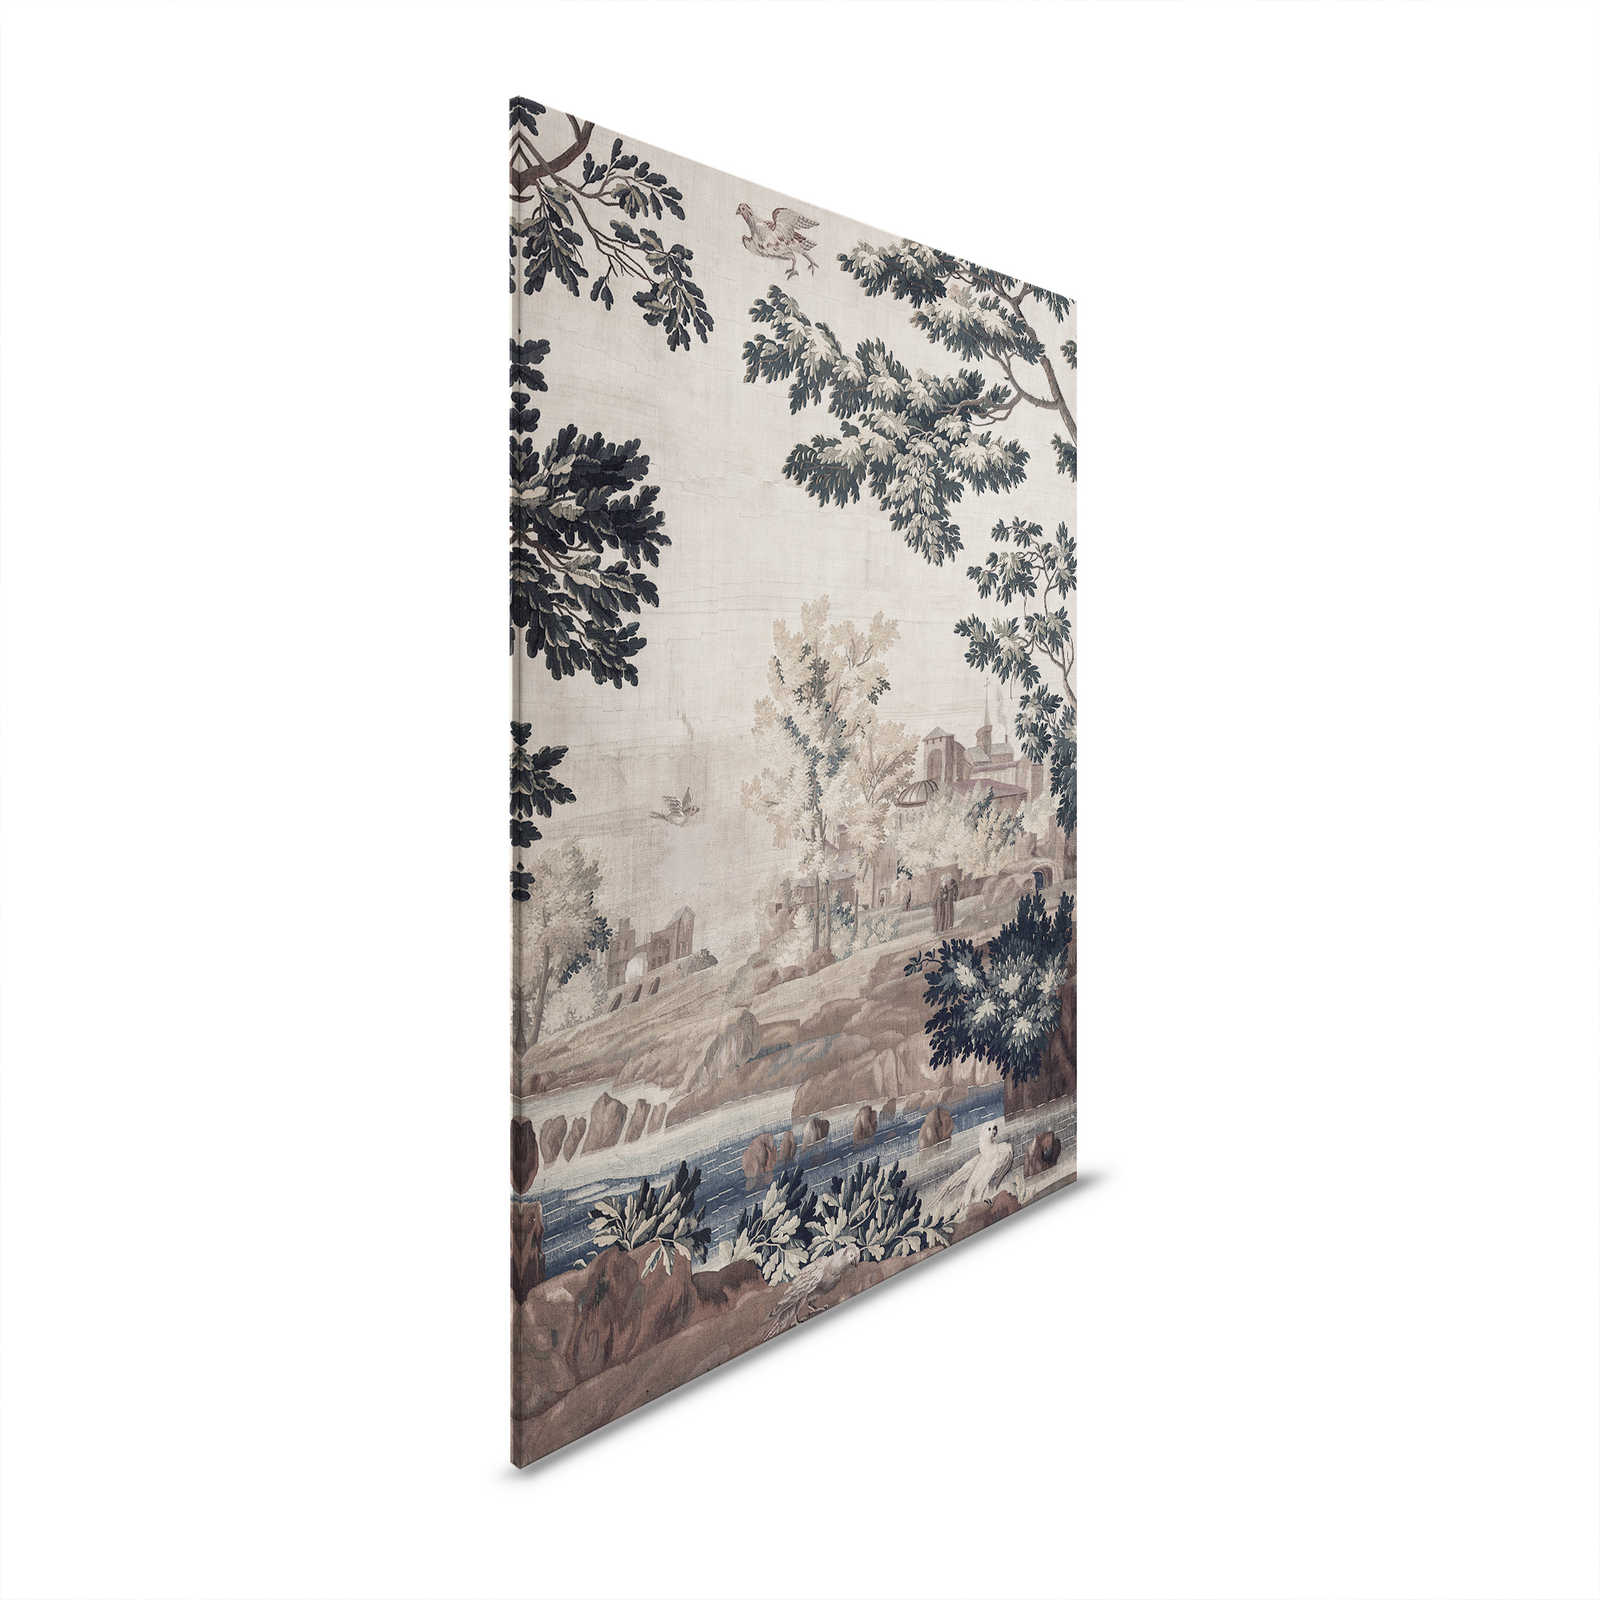 Gobelin Gallery 1 - Landschaft Leinwandbild historischer Wandteppich – 1,20 m x 0,80 m
